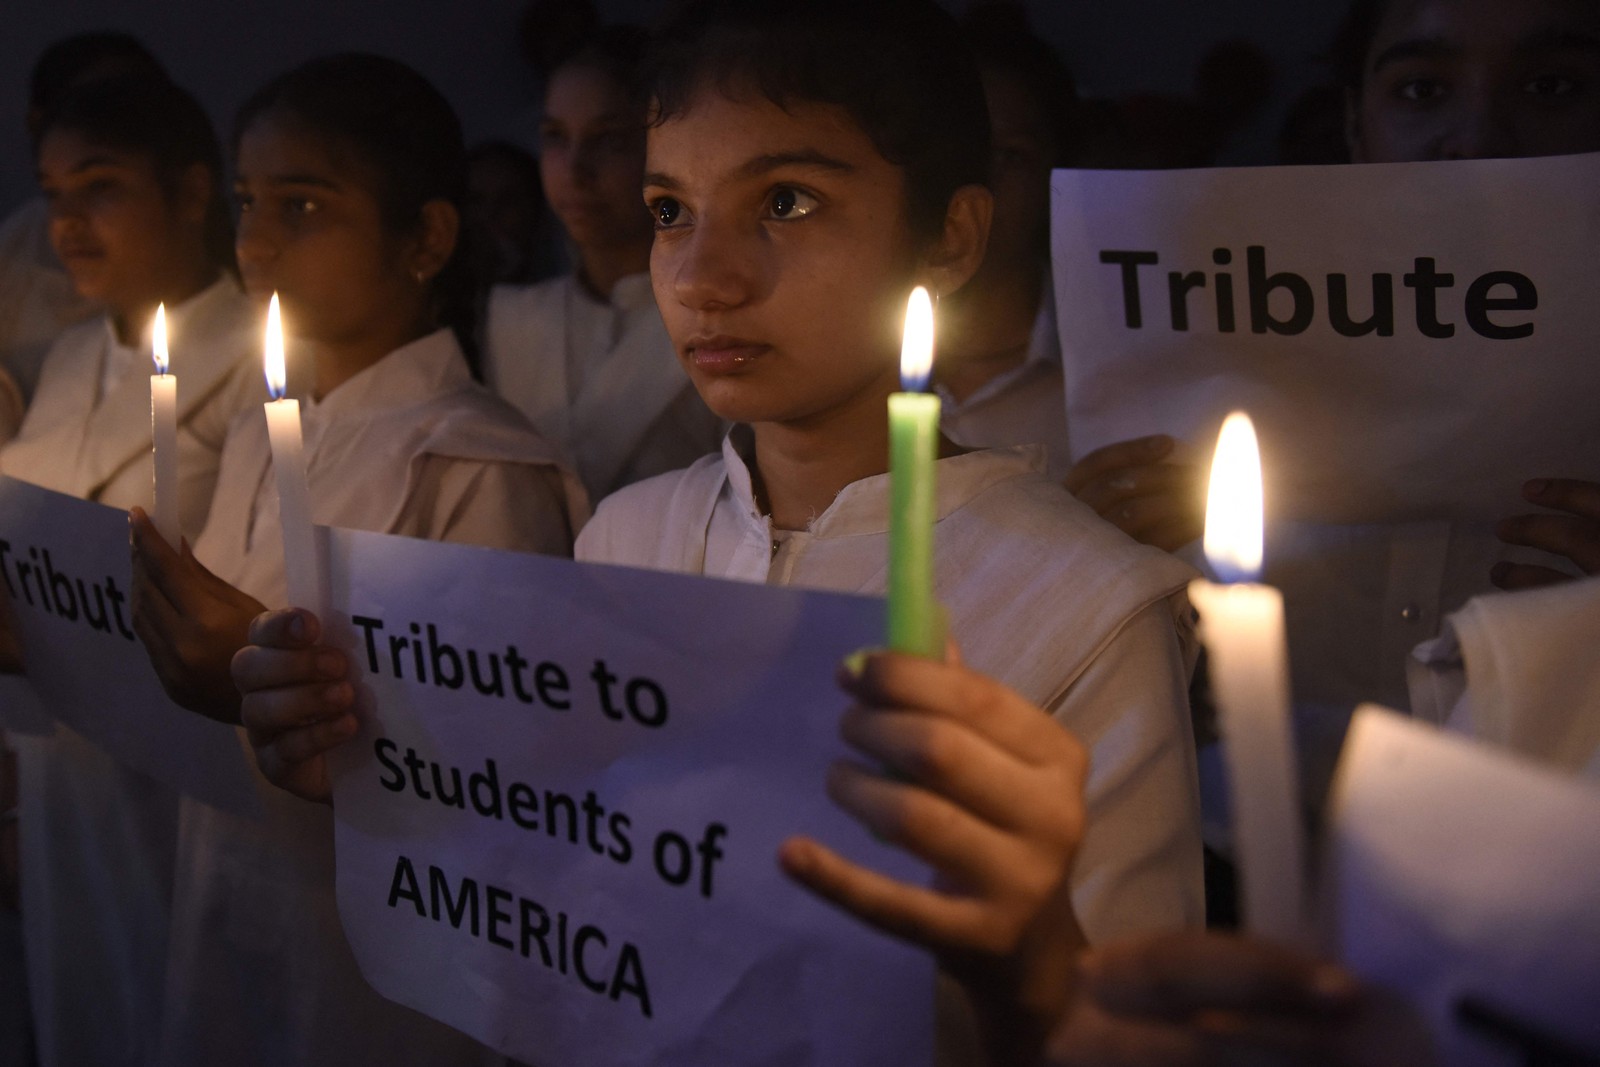 Estudantes seguram velas e cartazes em homenagem às vítimas do ataque à escola na comunidade latina no Texas — Foto: NARINDER NANU / AFP